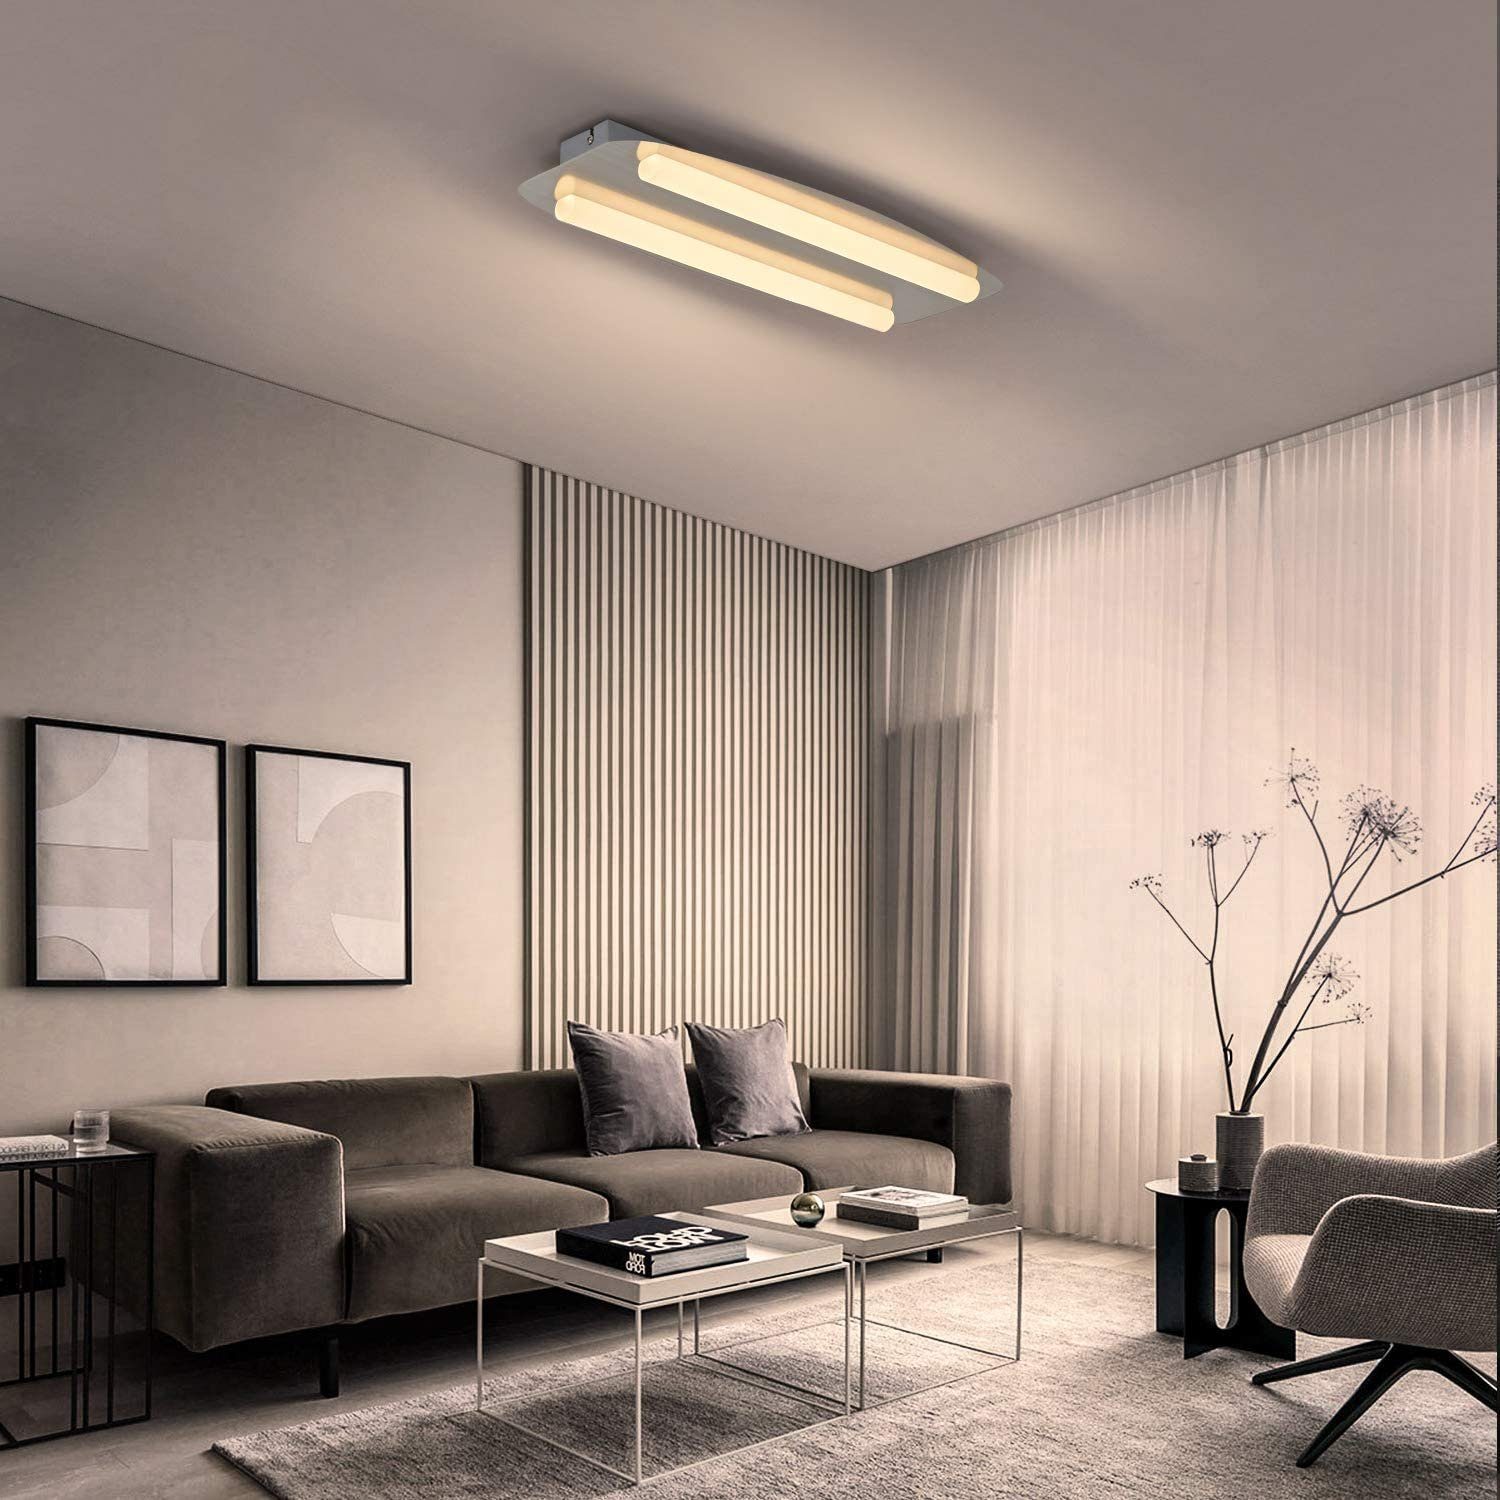 88W Acryl LED Warmweiß Deckenleuchte Deckenlampe Wohnzimmer Küche Badezimmber DE 